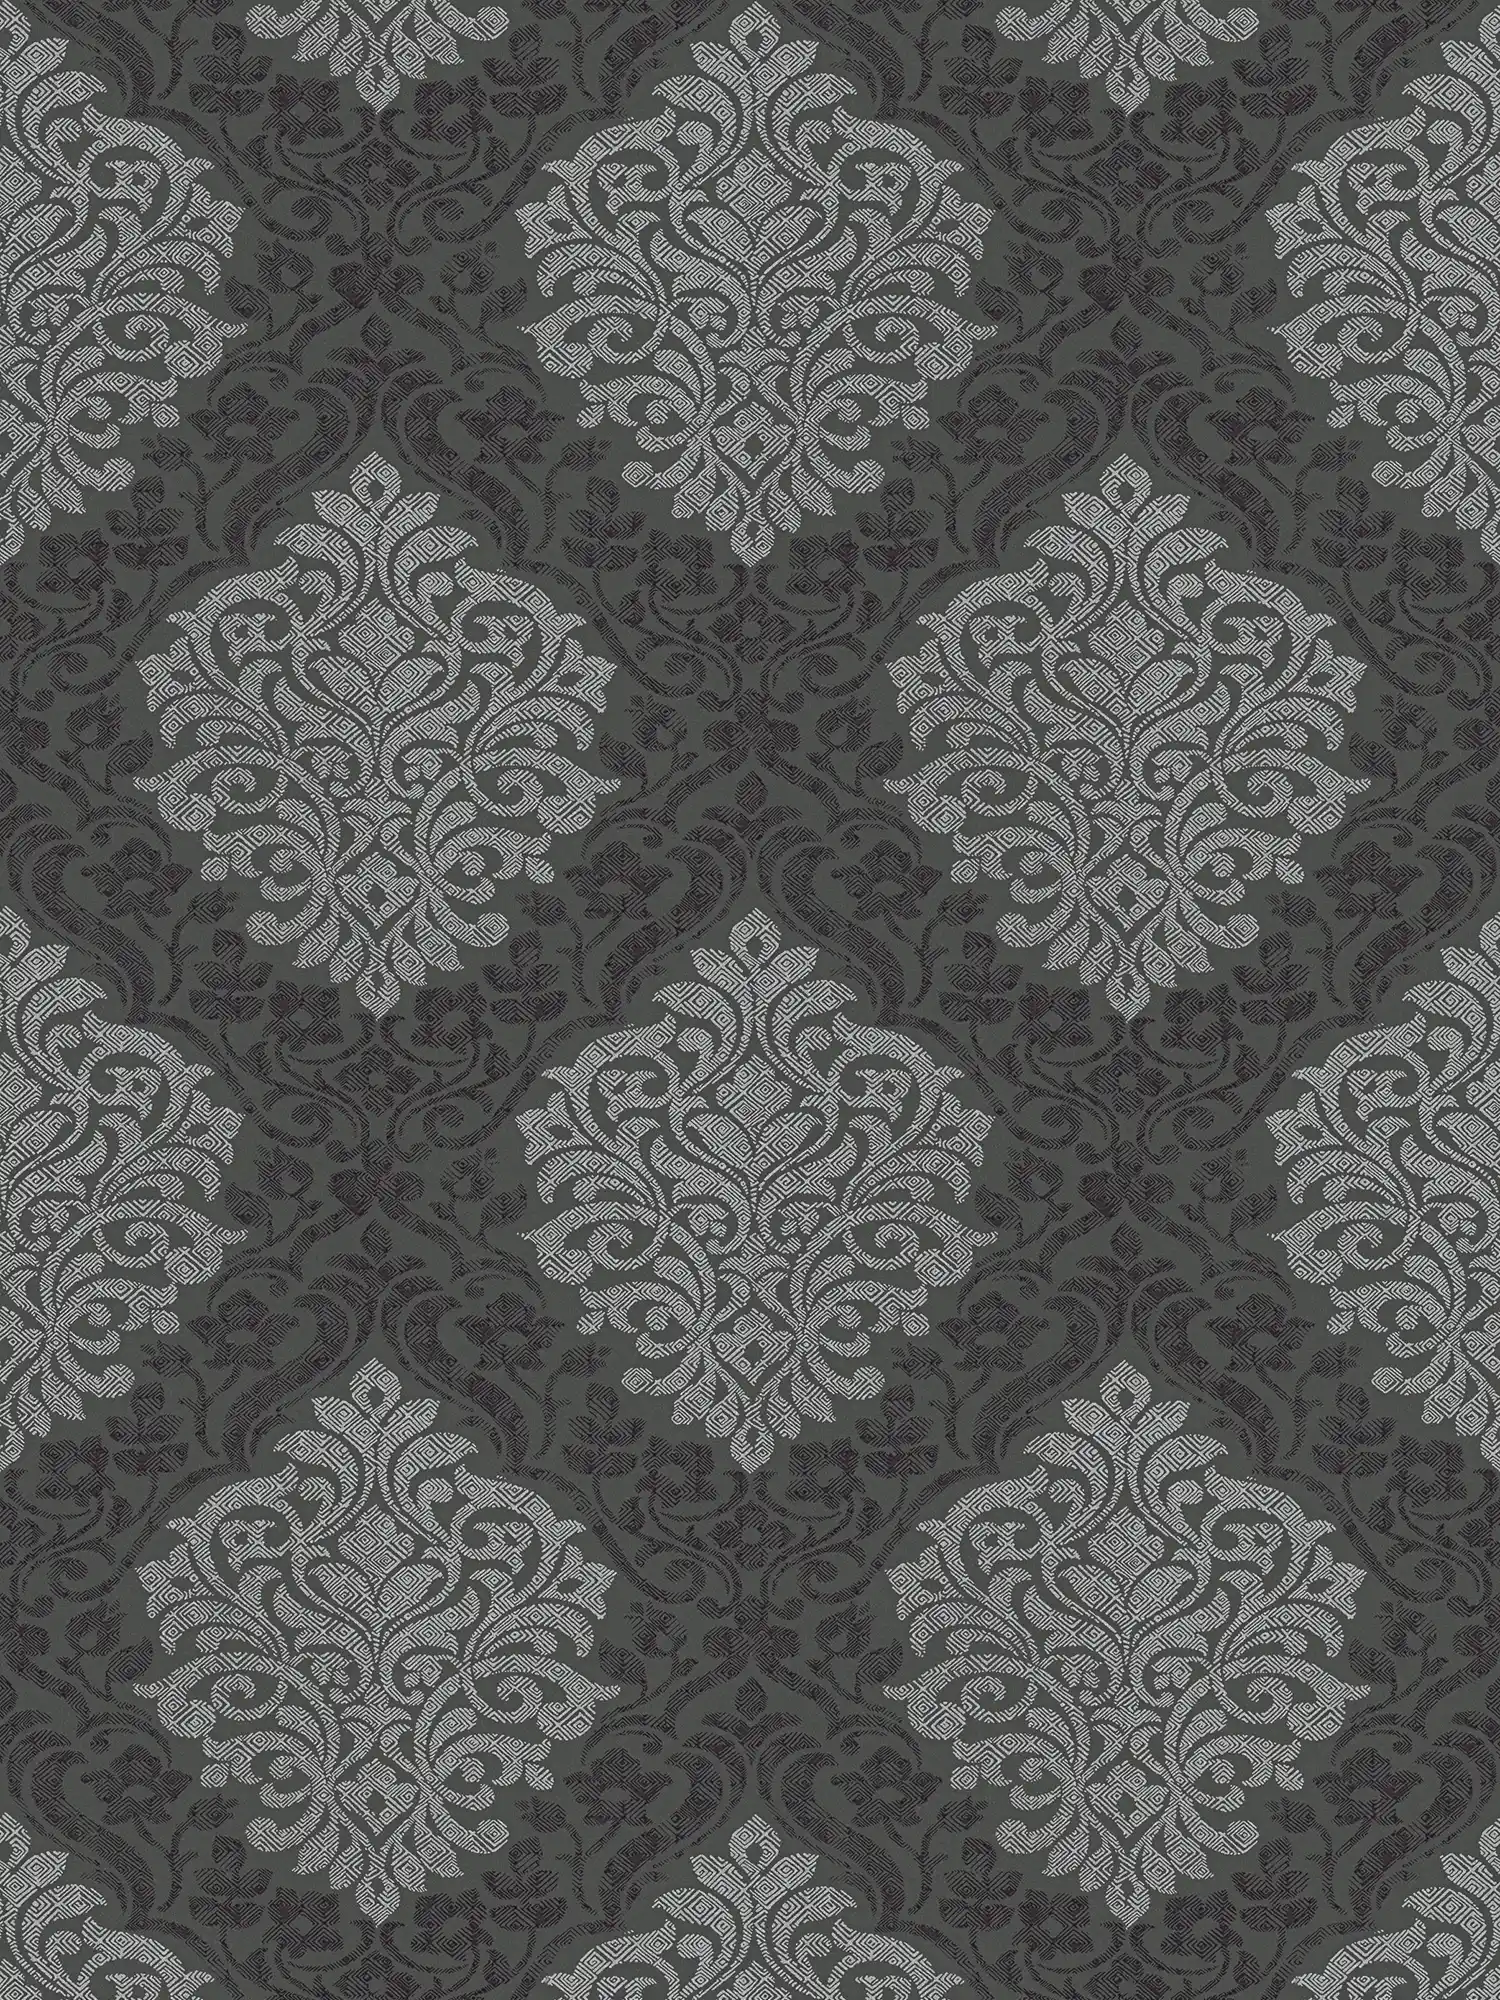 Papier peint floral ornemental motif losange style ethnique - argent, noir, gris
